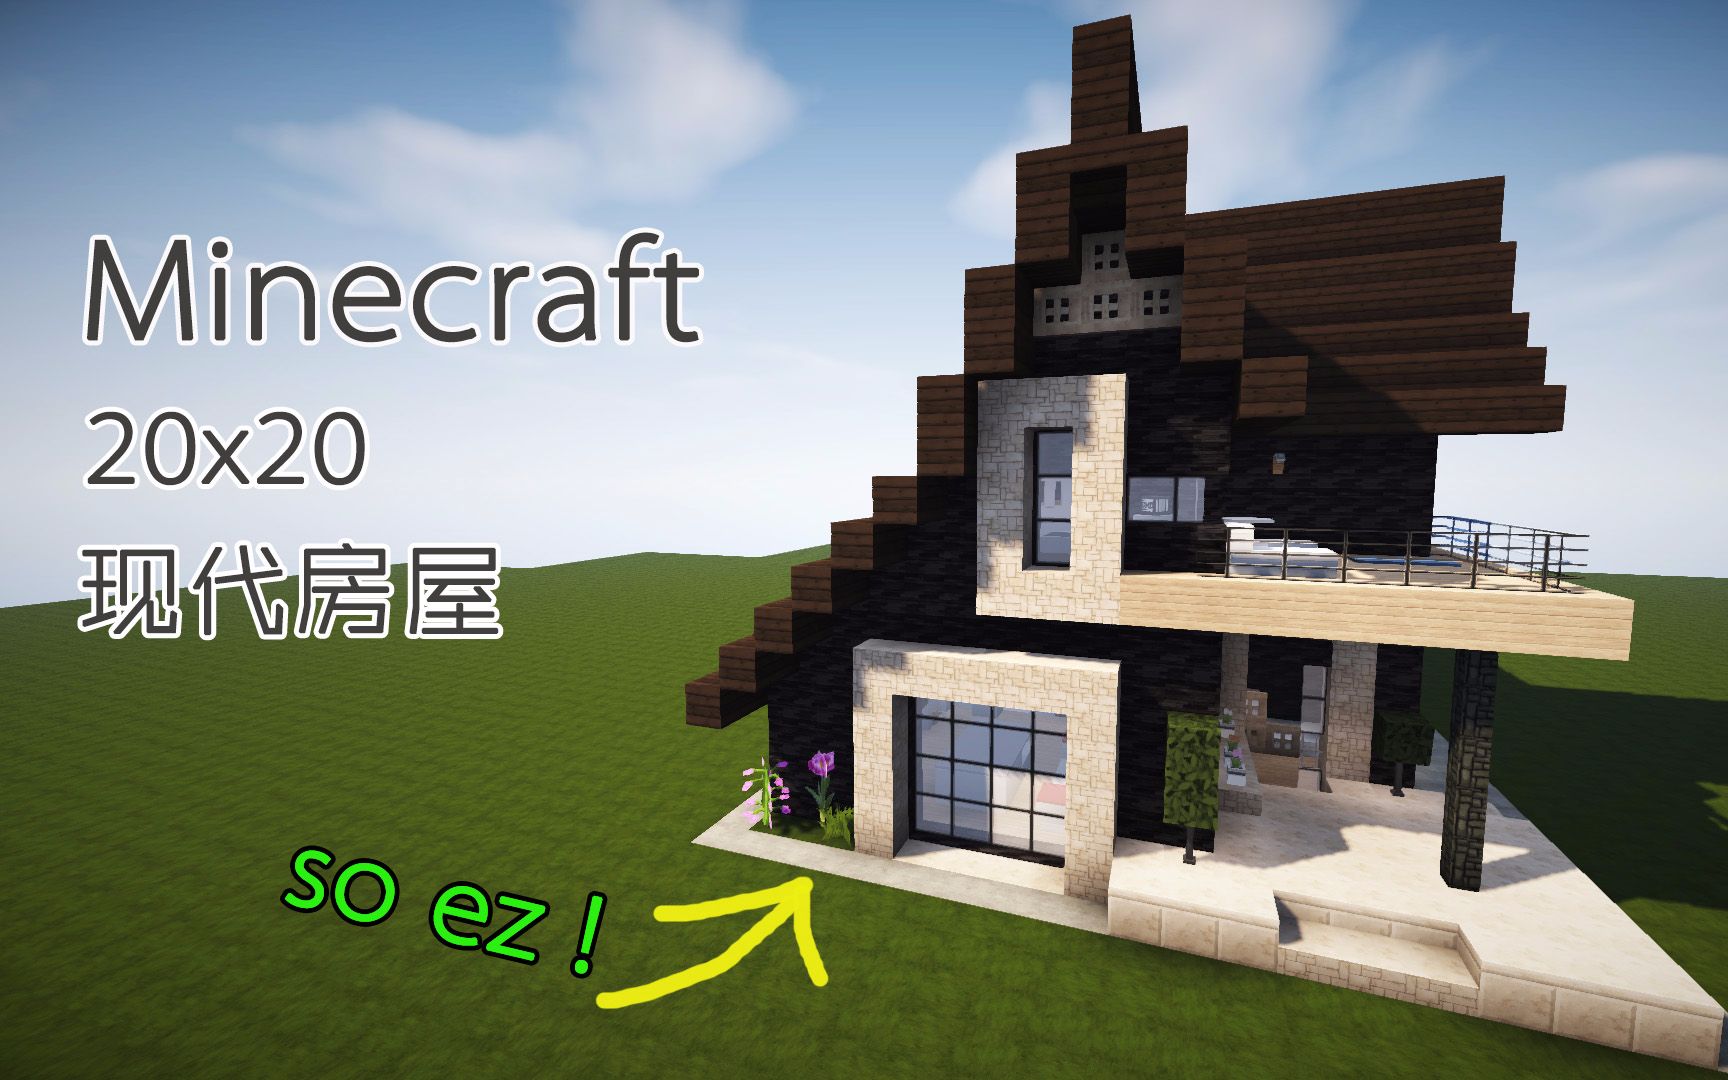 Cm小峰 Minecraft 我的世界 建筑教学 x 现代房屋 So Ez 哔哩哔哩 つロ干杯 Bilibili